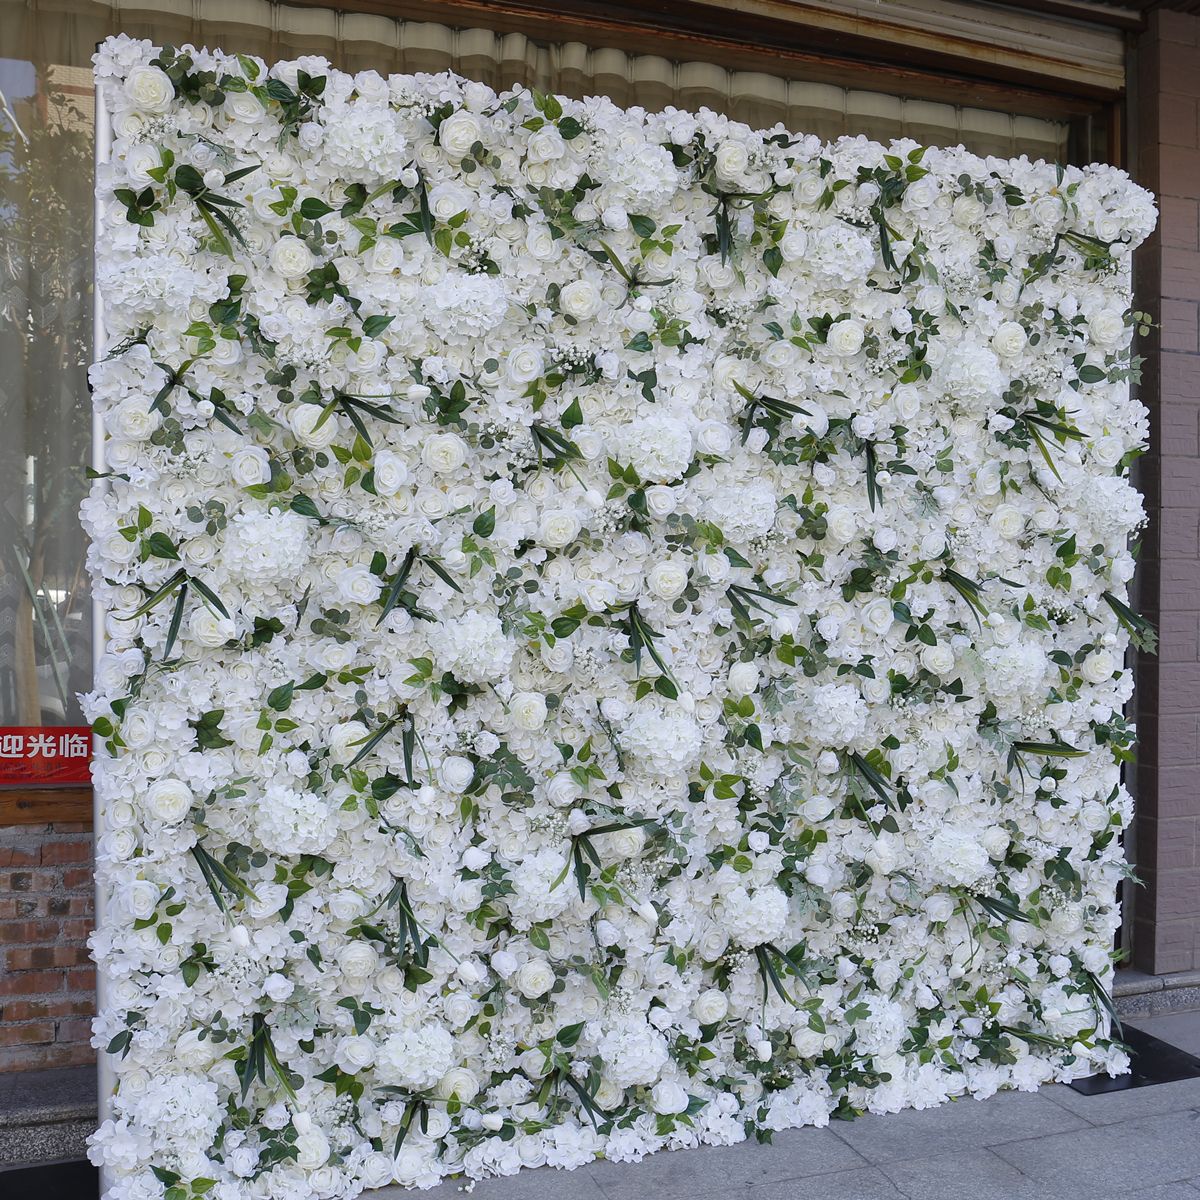 Weißer 5D-Stoff, Blumenwand, Hintergrundwand, Partyaktivitäten im Freien, Hochzeitsdekorationen, Hochzeiten